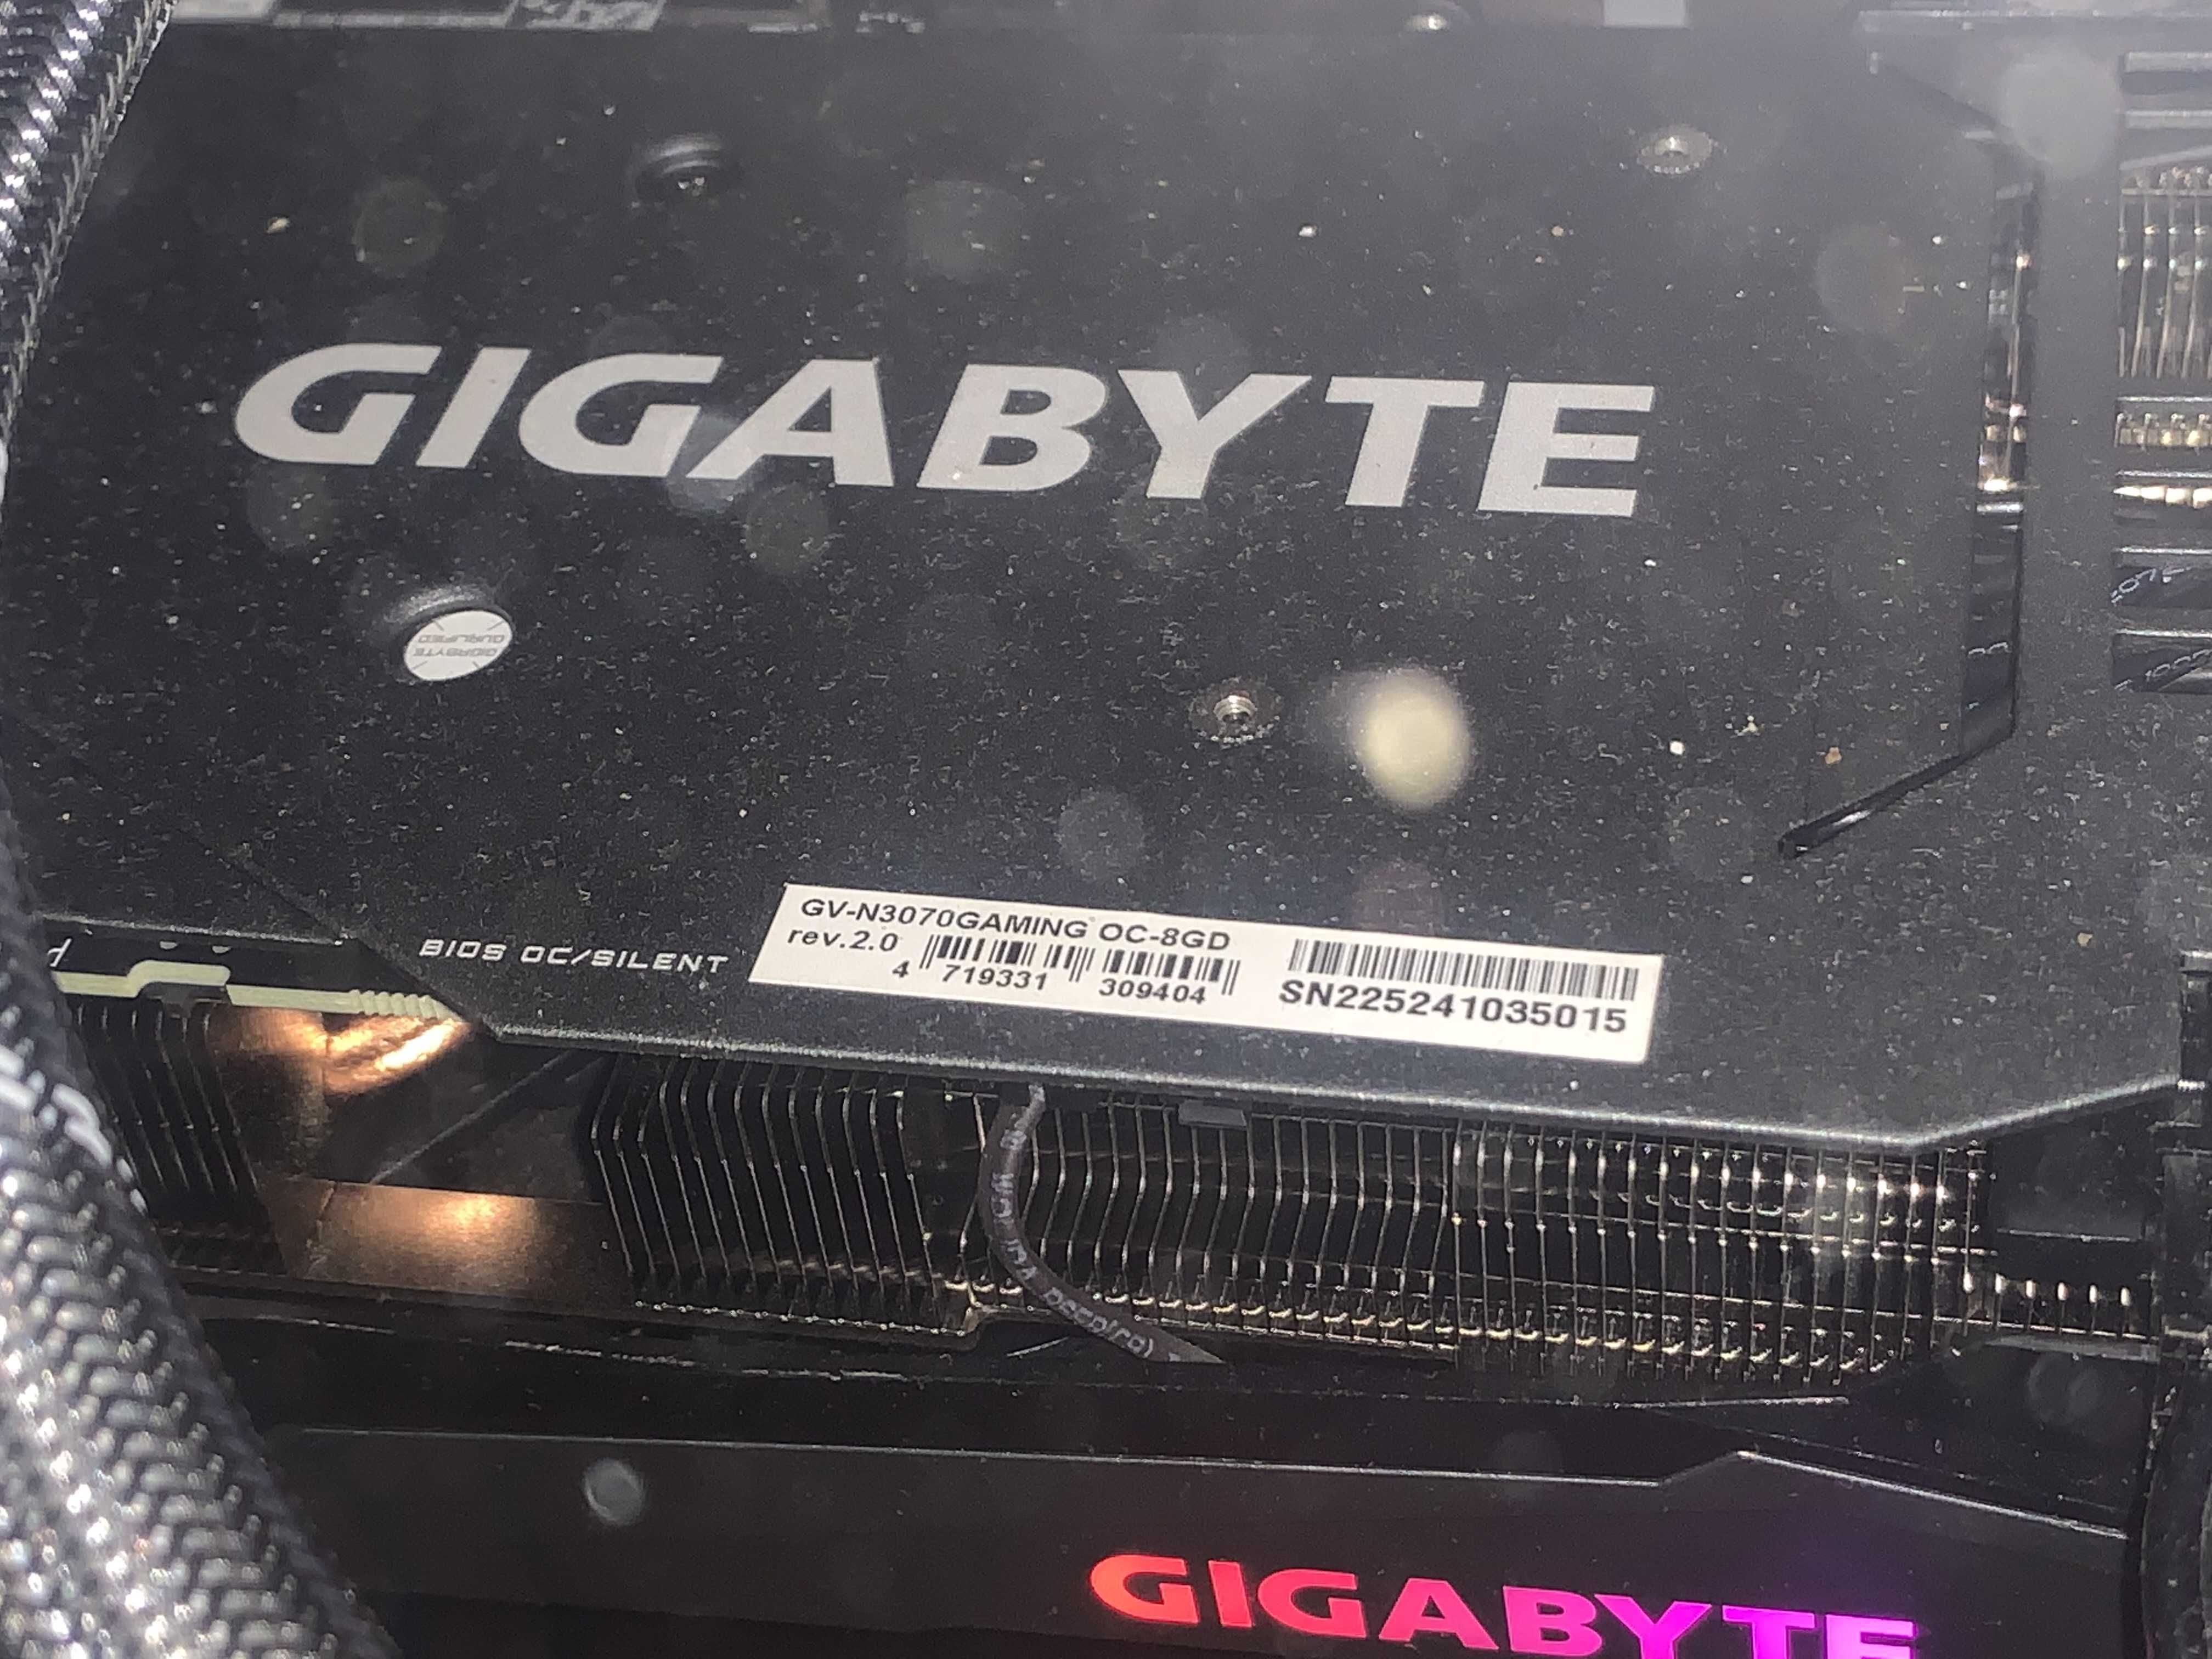 Placa video Gigabyte GeForce RTX 3070 gaming oc v2 lhr